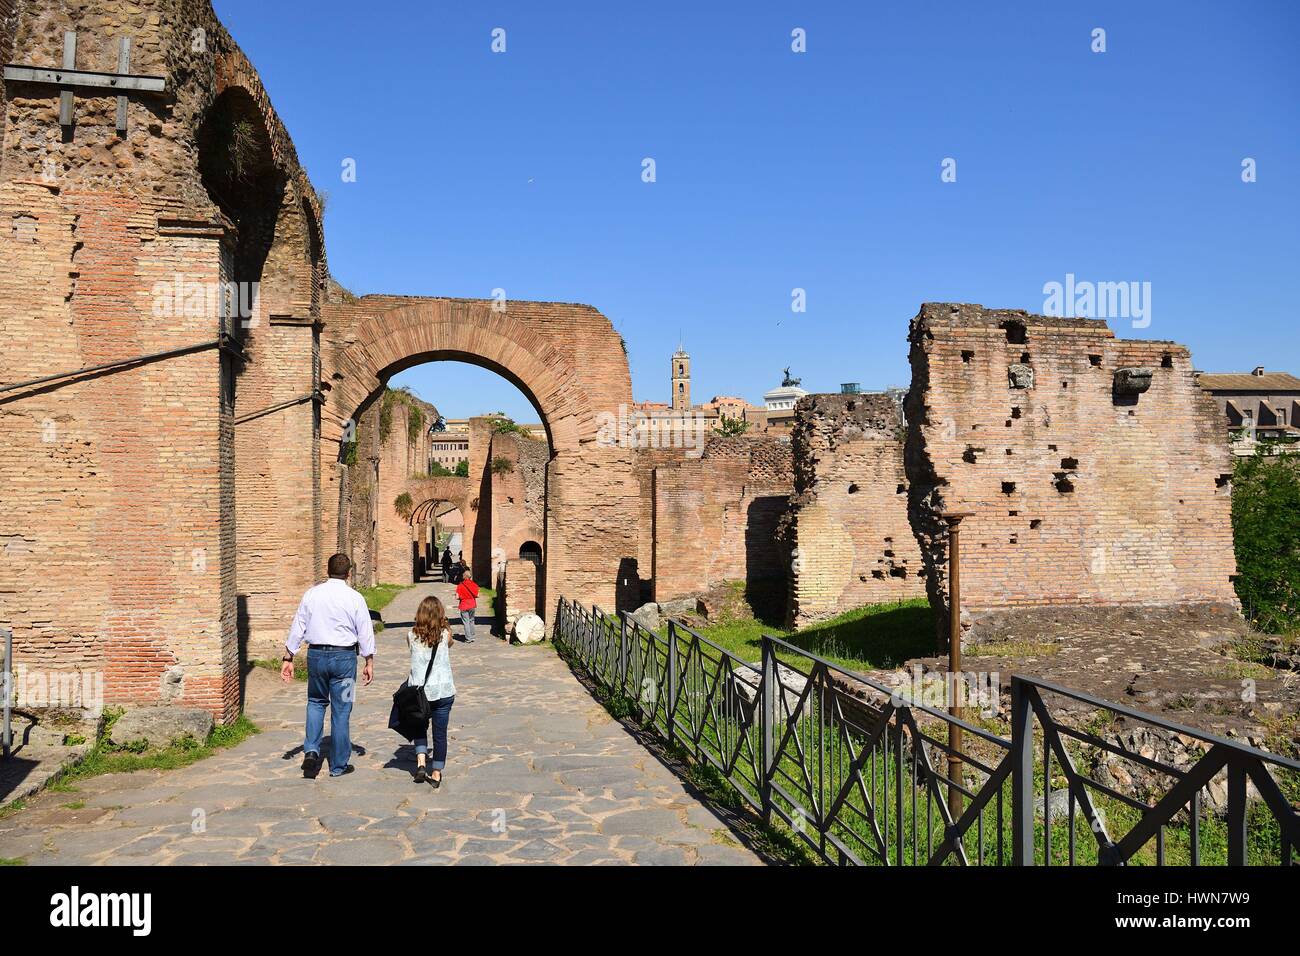 Italien, Latium, Rom, historischen Zentrum als Weltkulturerbe von der UNESCO, das Forum Romanum oder das Forum Romanum war für Jahrhunderte das Zentrum der Römischen öffentlichen Leben, Santa Maria Antiqua Kirche Stockfoto